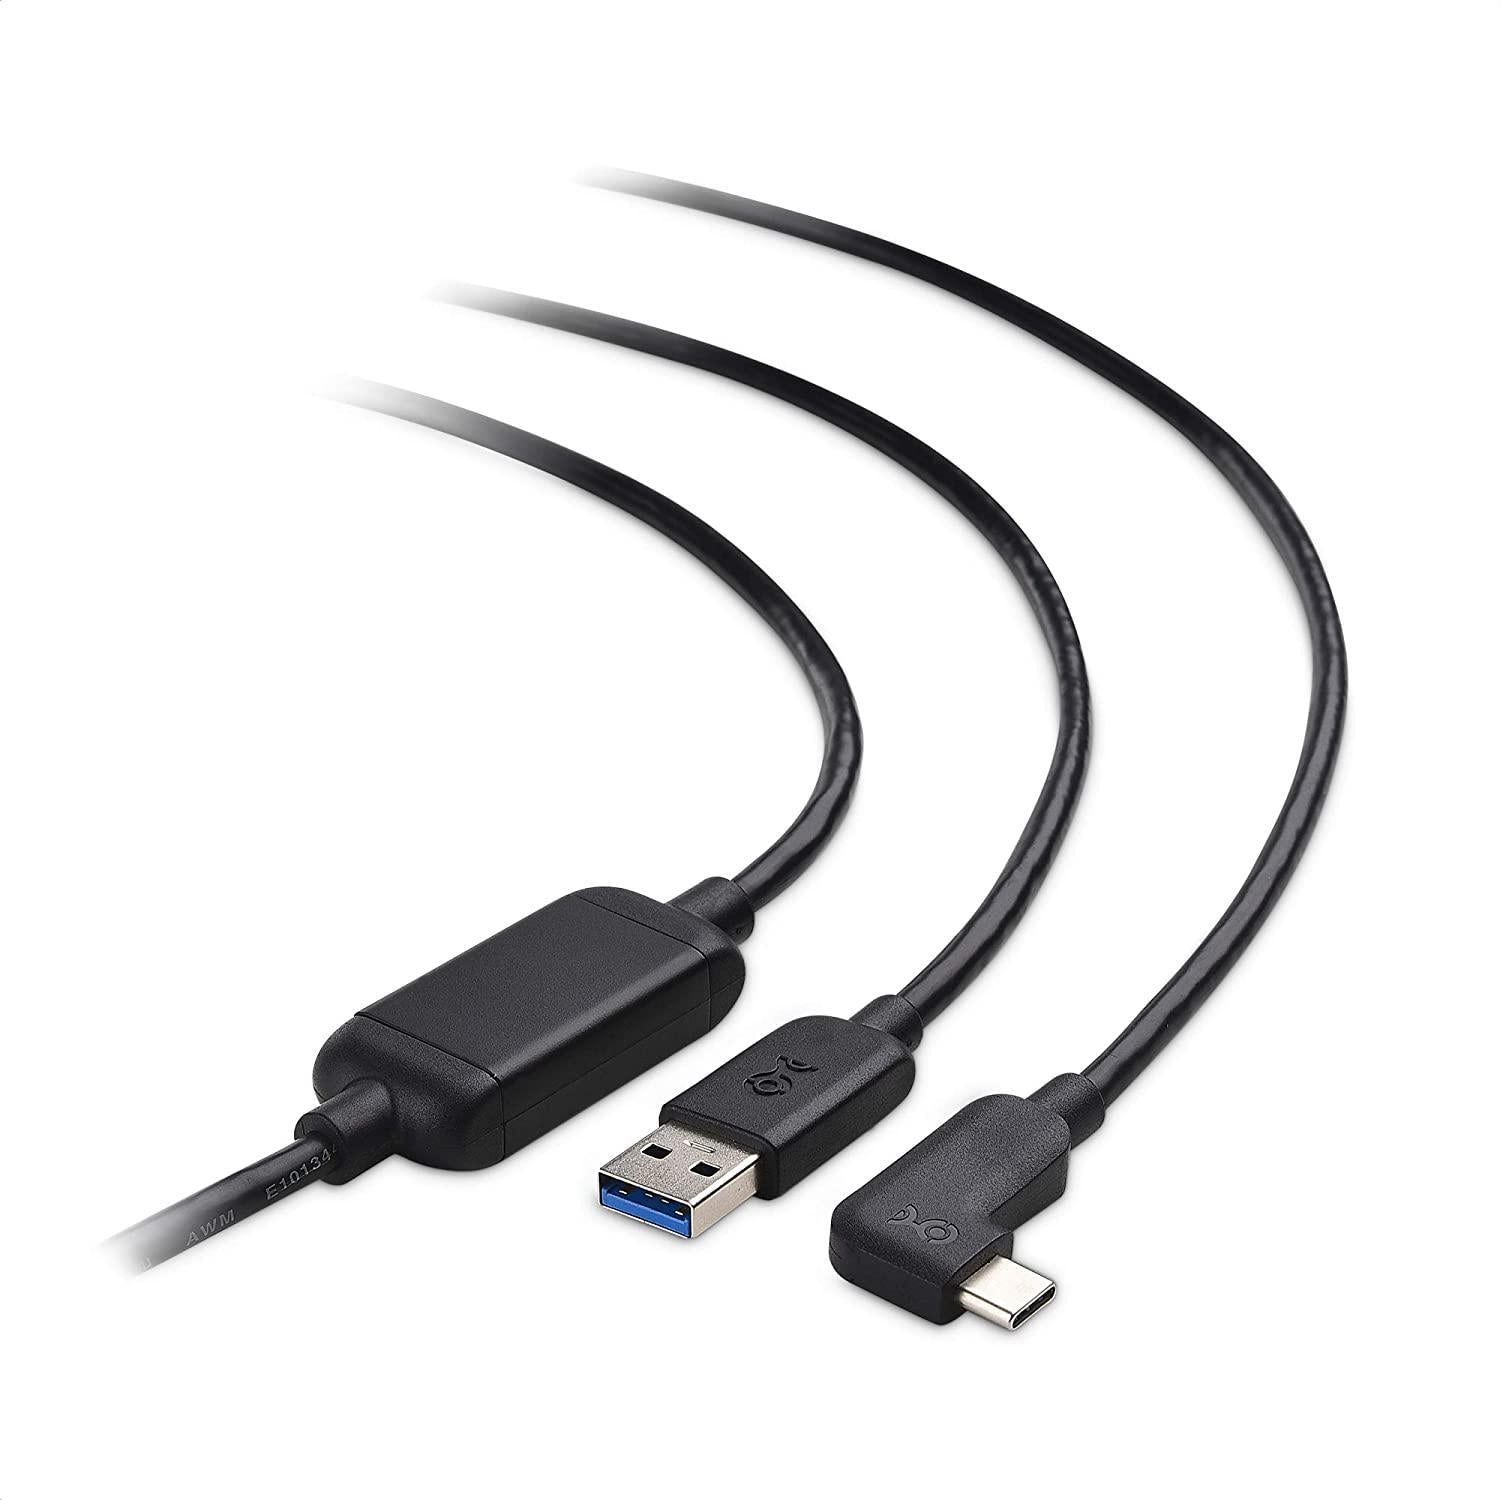 Cable Matters aktivt 75 m USB-C til USB-A VR Link-kabel til Oculus Quest 2 USB3.2 Gen1 5 Gbps 3A Super Speed VR Link-kabel